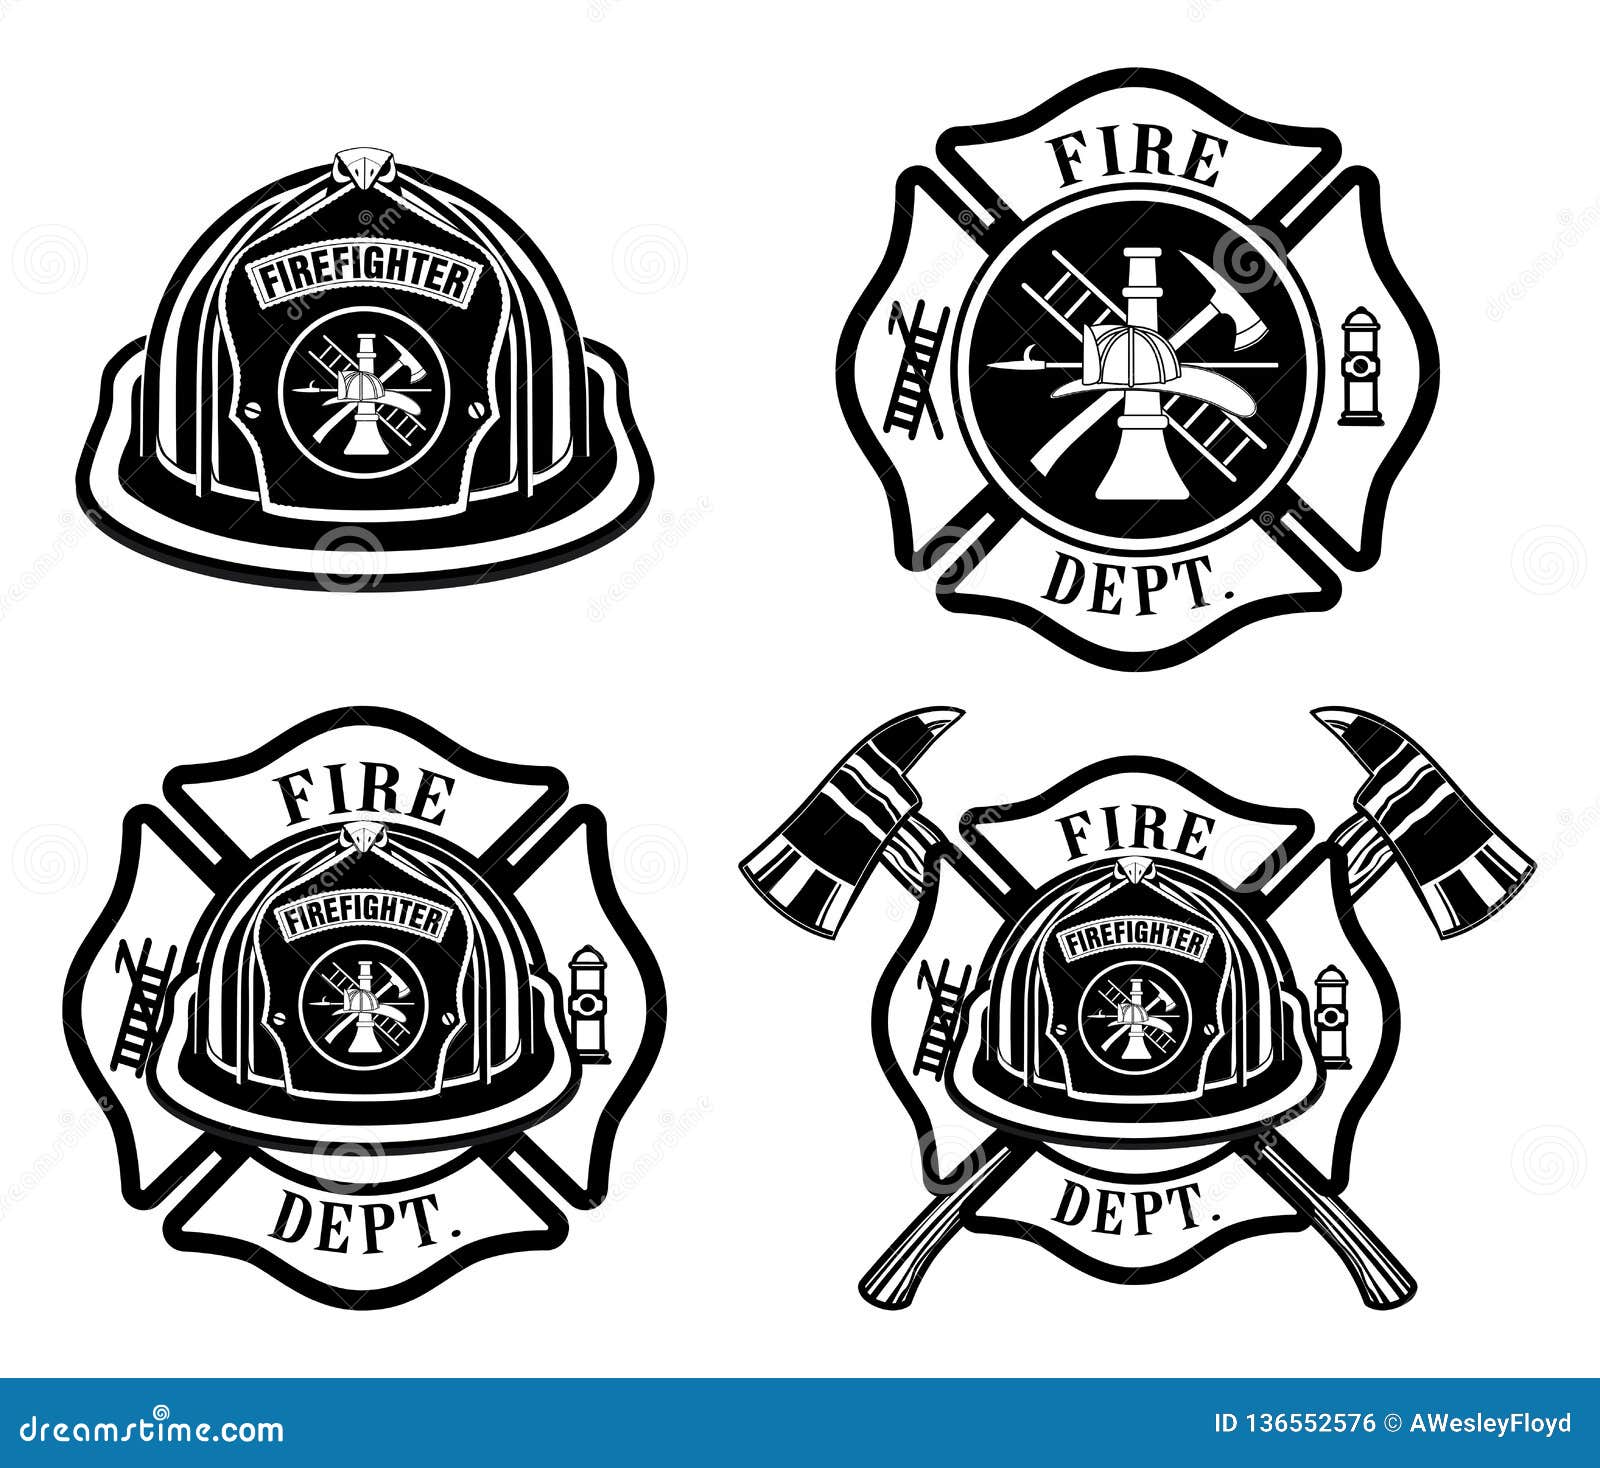 fire department cross and helmet s